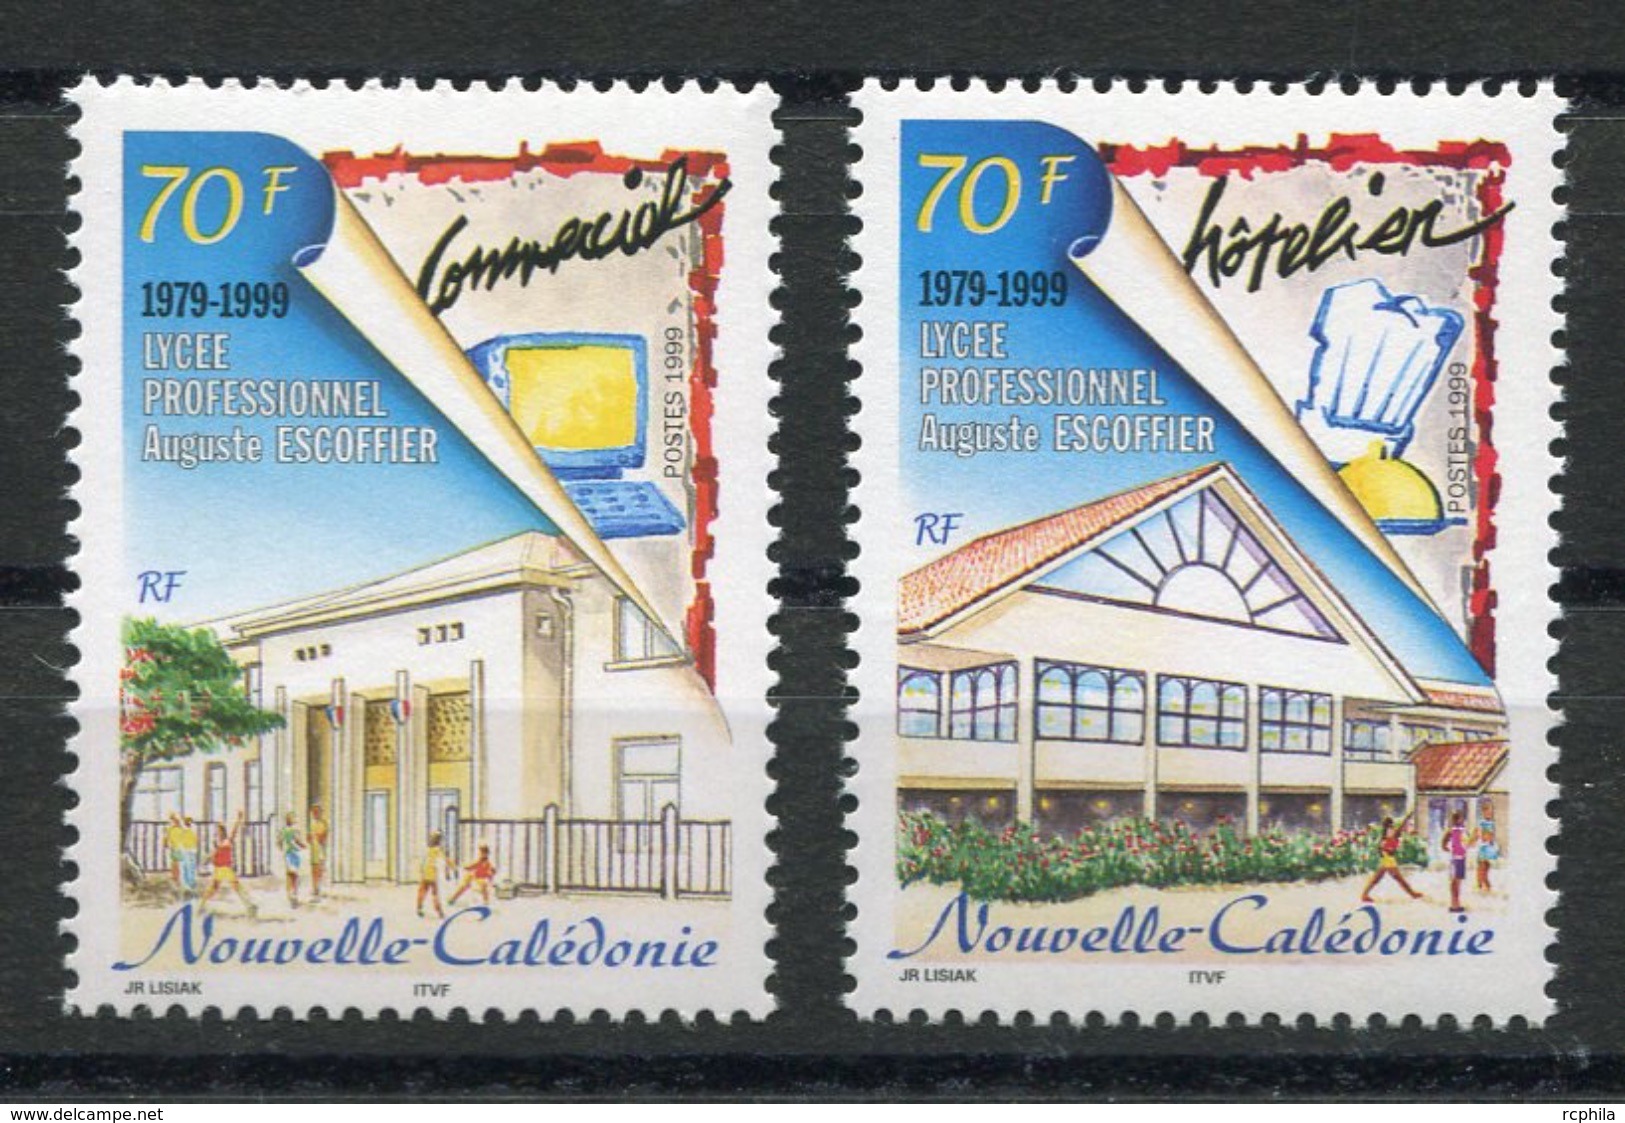 RC 8247 NOUVELLE CALÉDONIE N° 797 / 798 LYCÉE PROFESSIONNEL ESCOFFIER NEUF ** - Unused Stamps